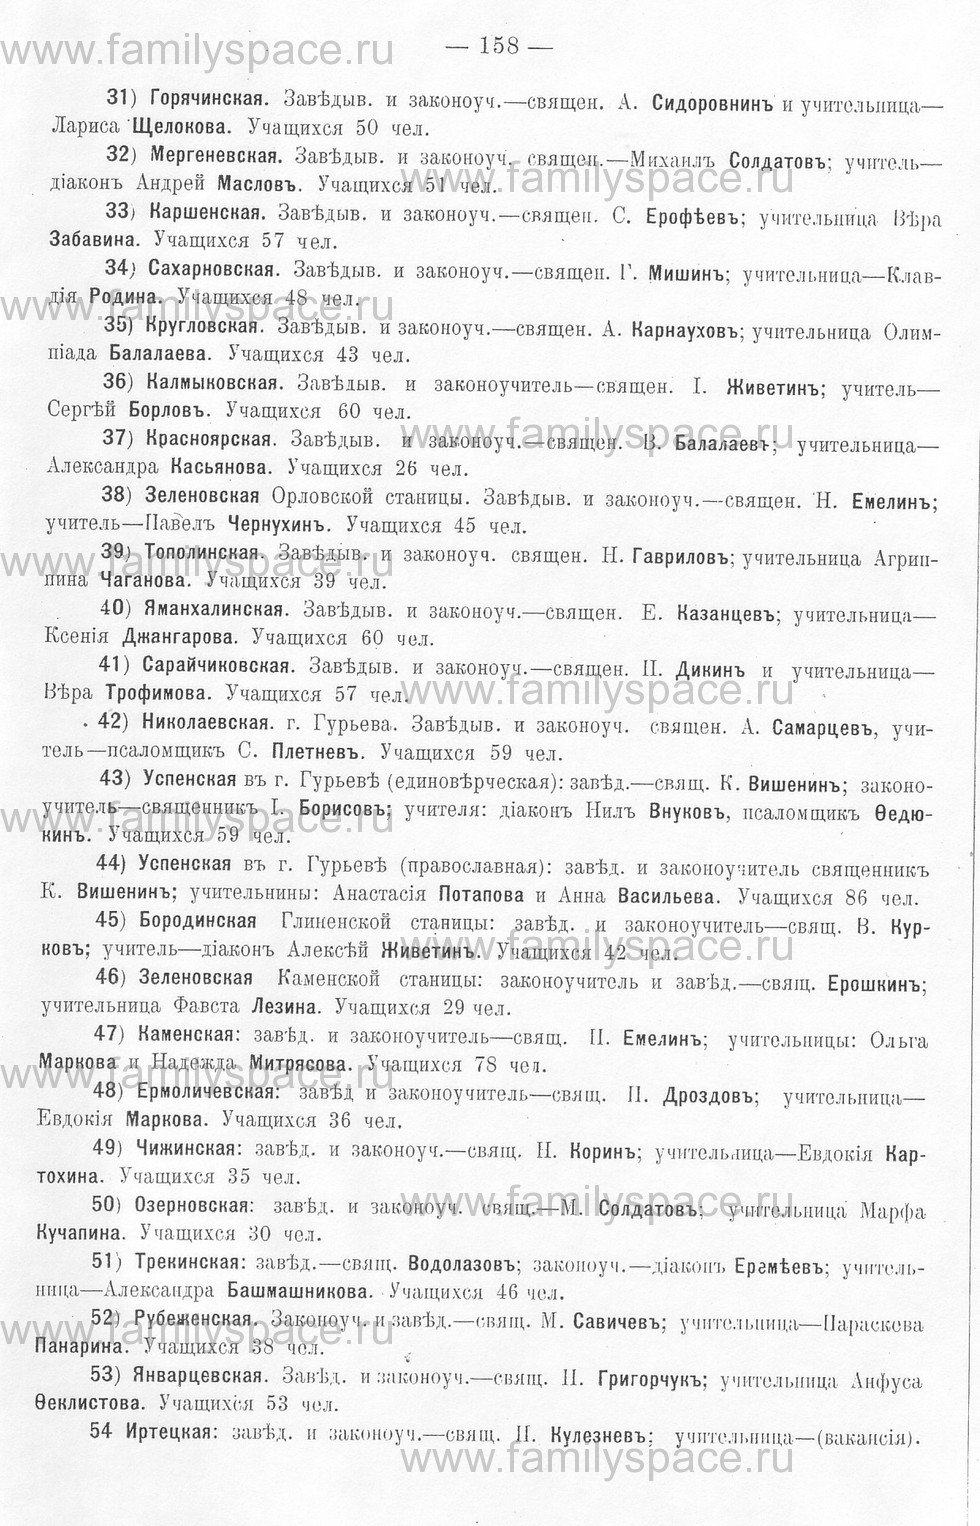 Поиск по фамилии - Памятная книжка Уральской области на 1913 год, страница 158